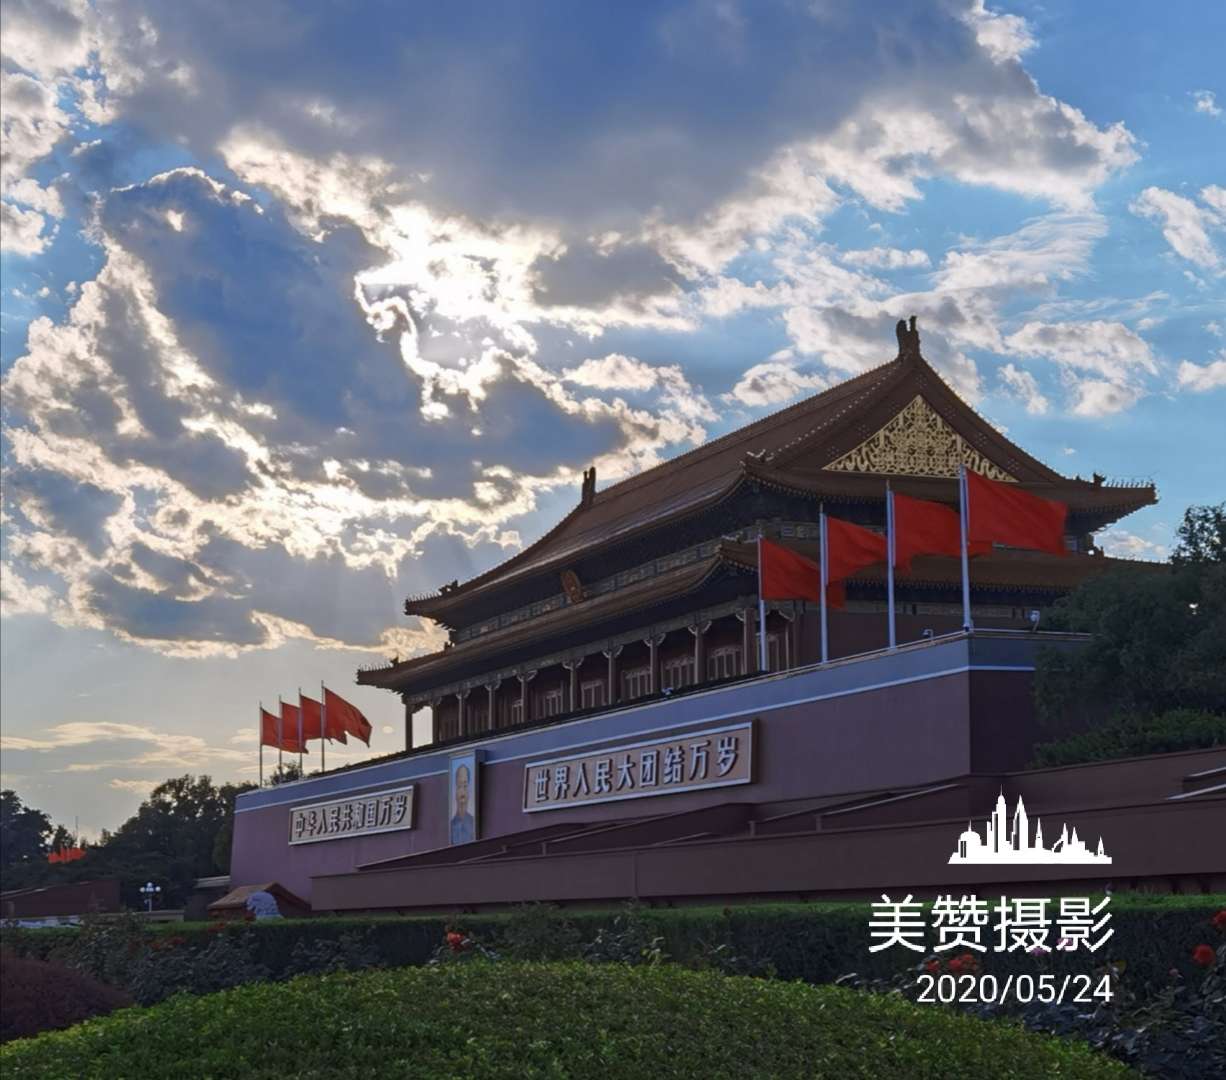 天安门城楼：六百年不倒，中国宫殿建筑史上辉煌的杰作-新华图闻网